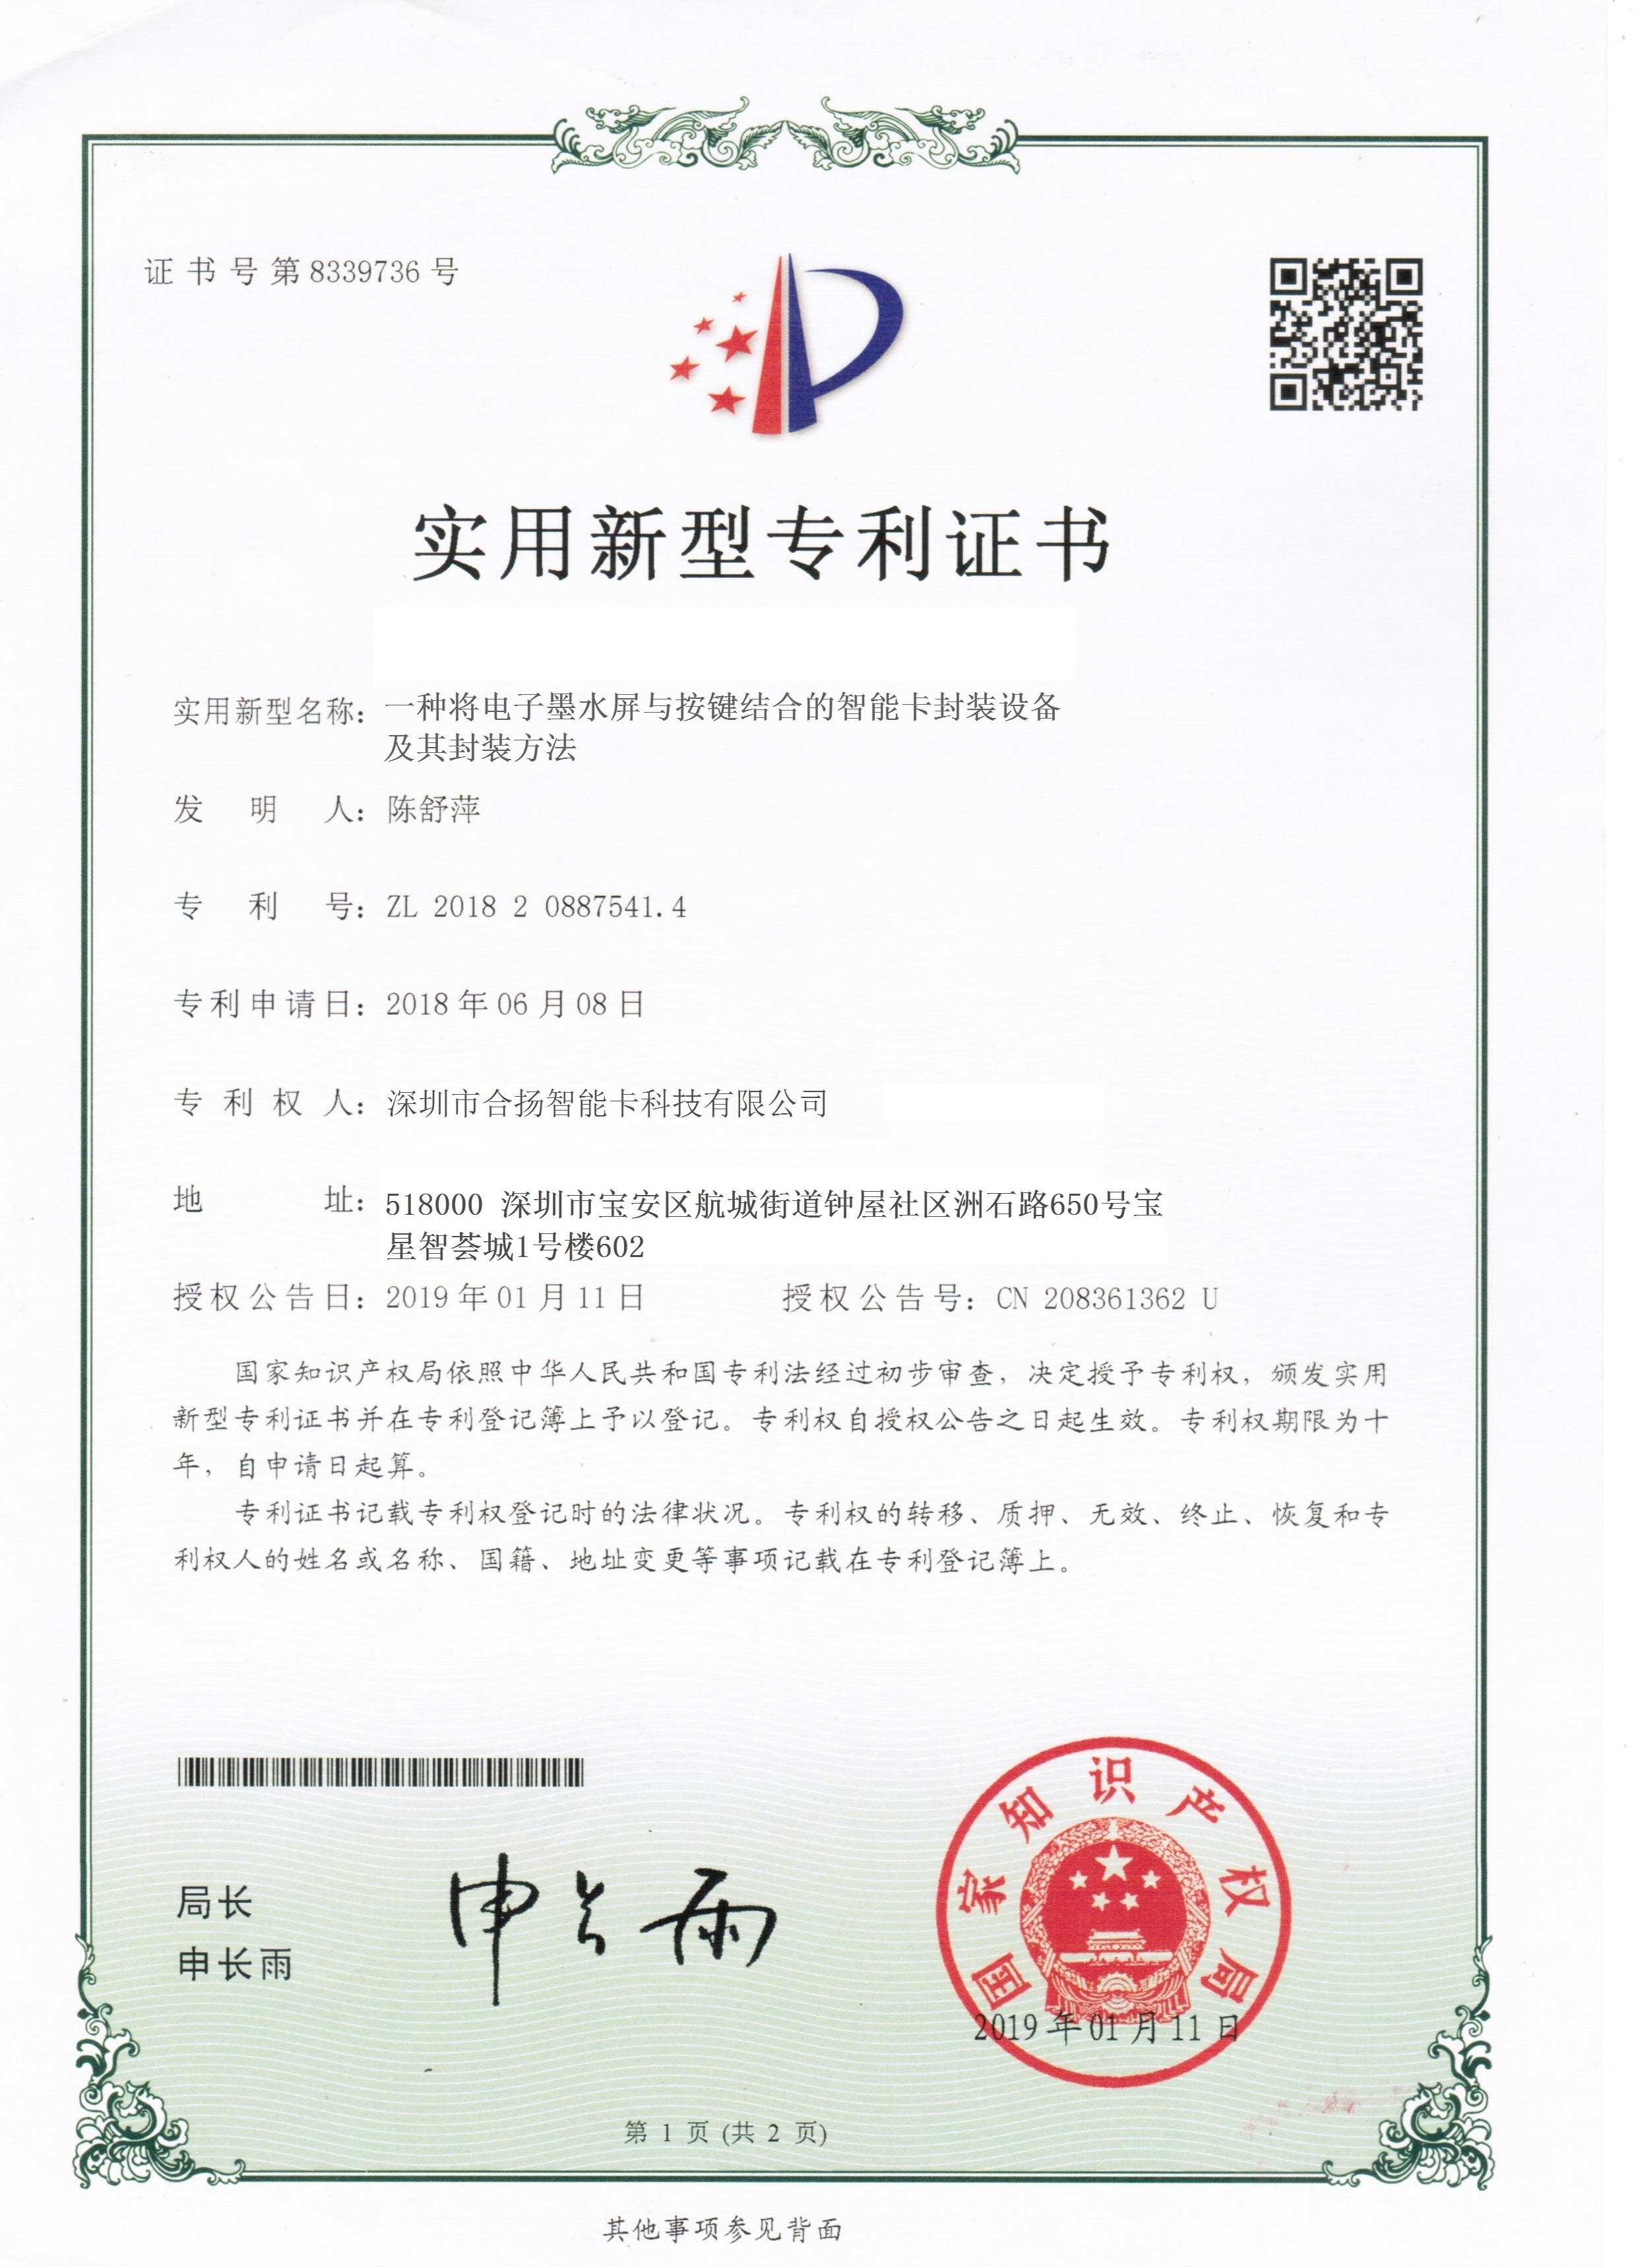 SHENZHEN HEYANG SMART CARD TECHNOLOGY CO., LTD Certifications